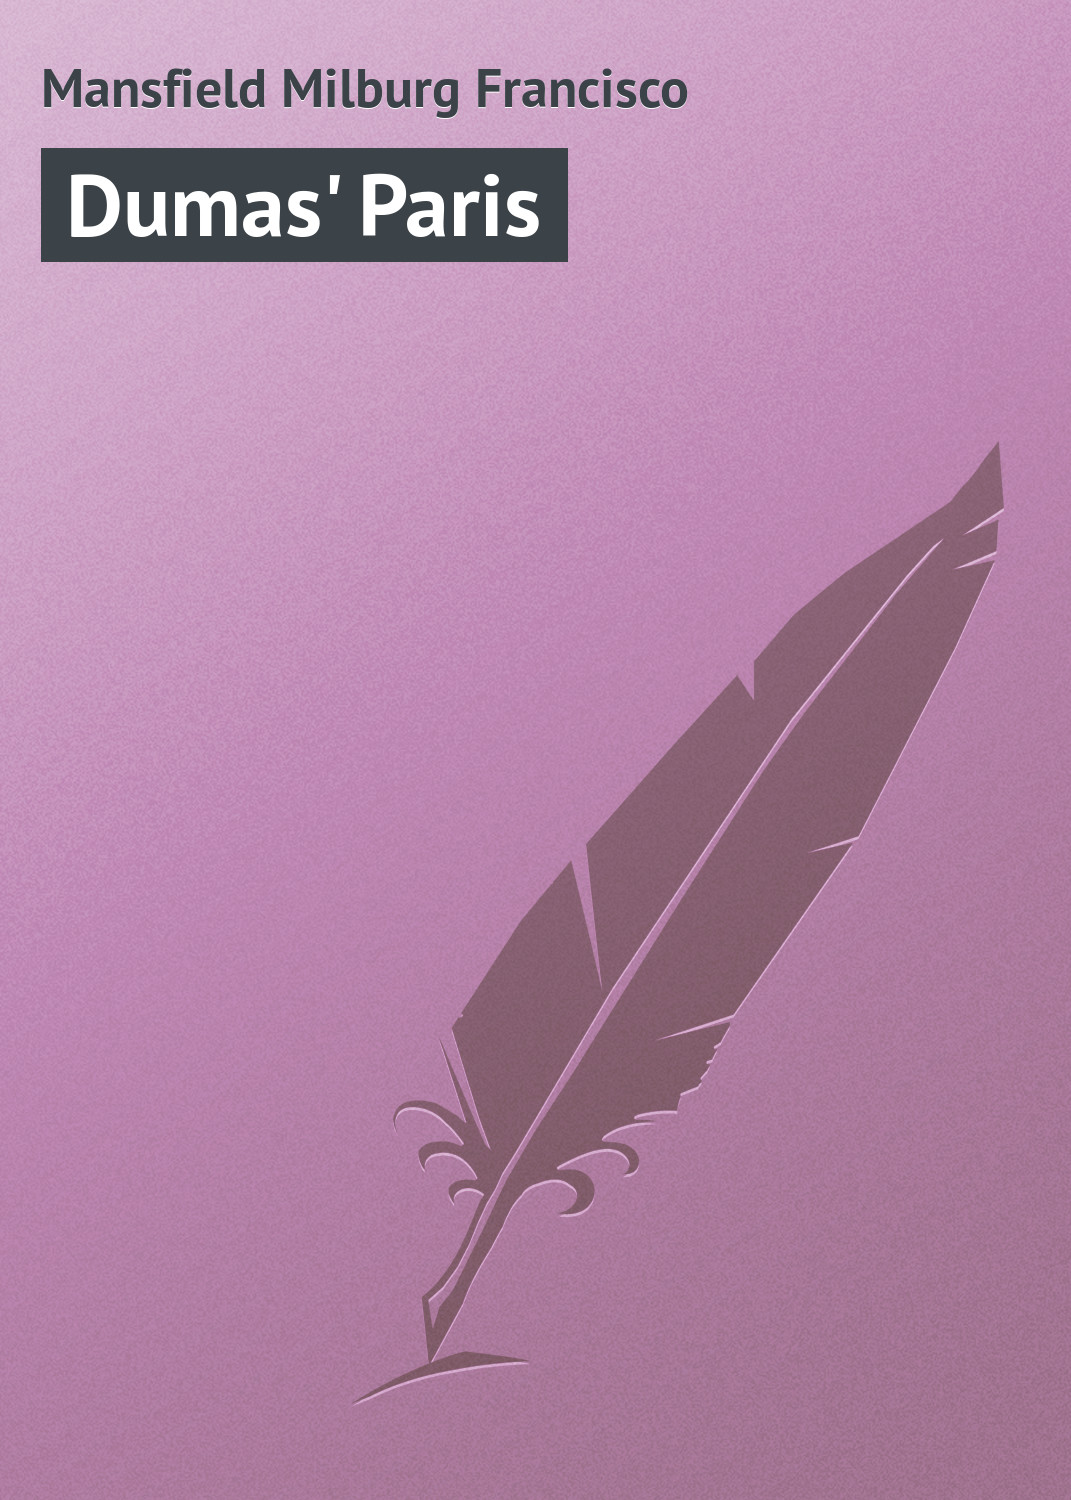 Книга Dumas' Paris из серии , созданная Milburg Mansfield, может относится к жанру Зарубежная классика, Книги о Путешествиях. Стоимость электронной книги Dumas' Paris с идентификатором 23160179 составляет 5.99 руб.